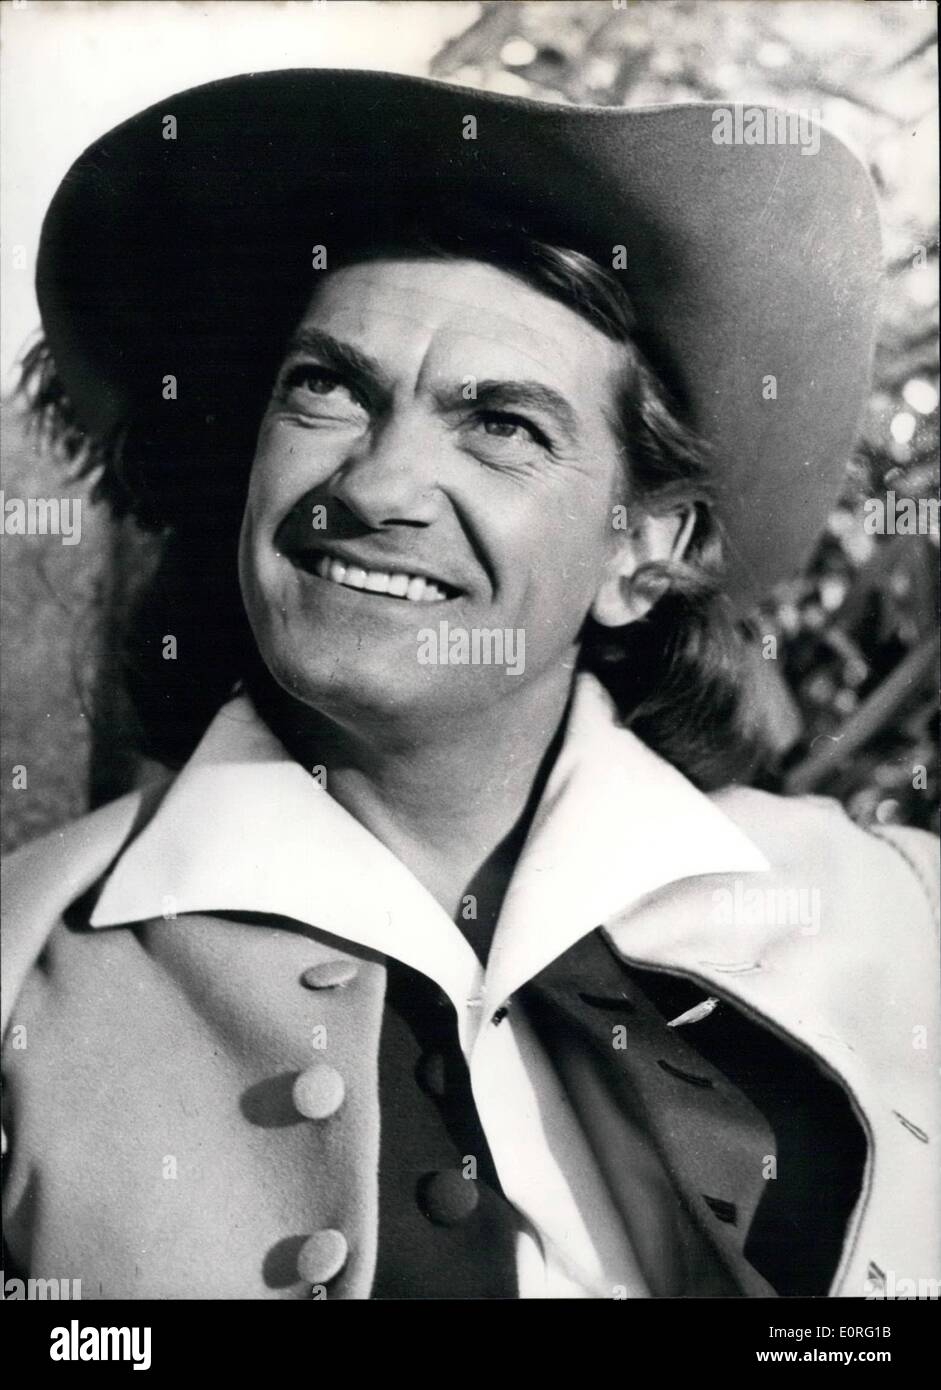 Juin 06, 1959 - Jean Marais dans son nouveau film : Le Bossu (la croupe  soutenu Mna) : Le célèbre acteur français Jean Marais est co-vedette avec la  charmante actrice allemande, Sabrina